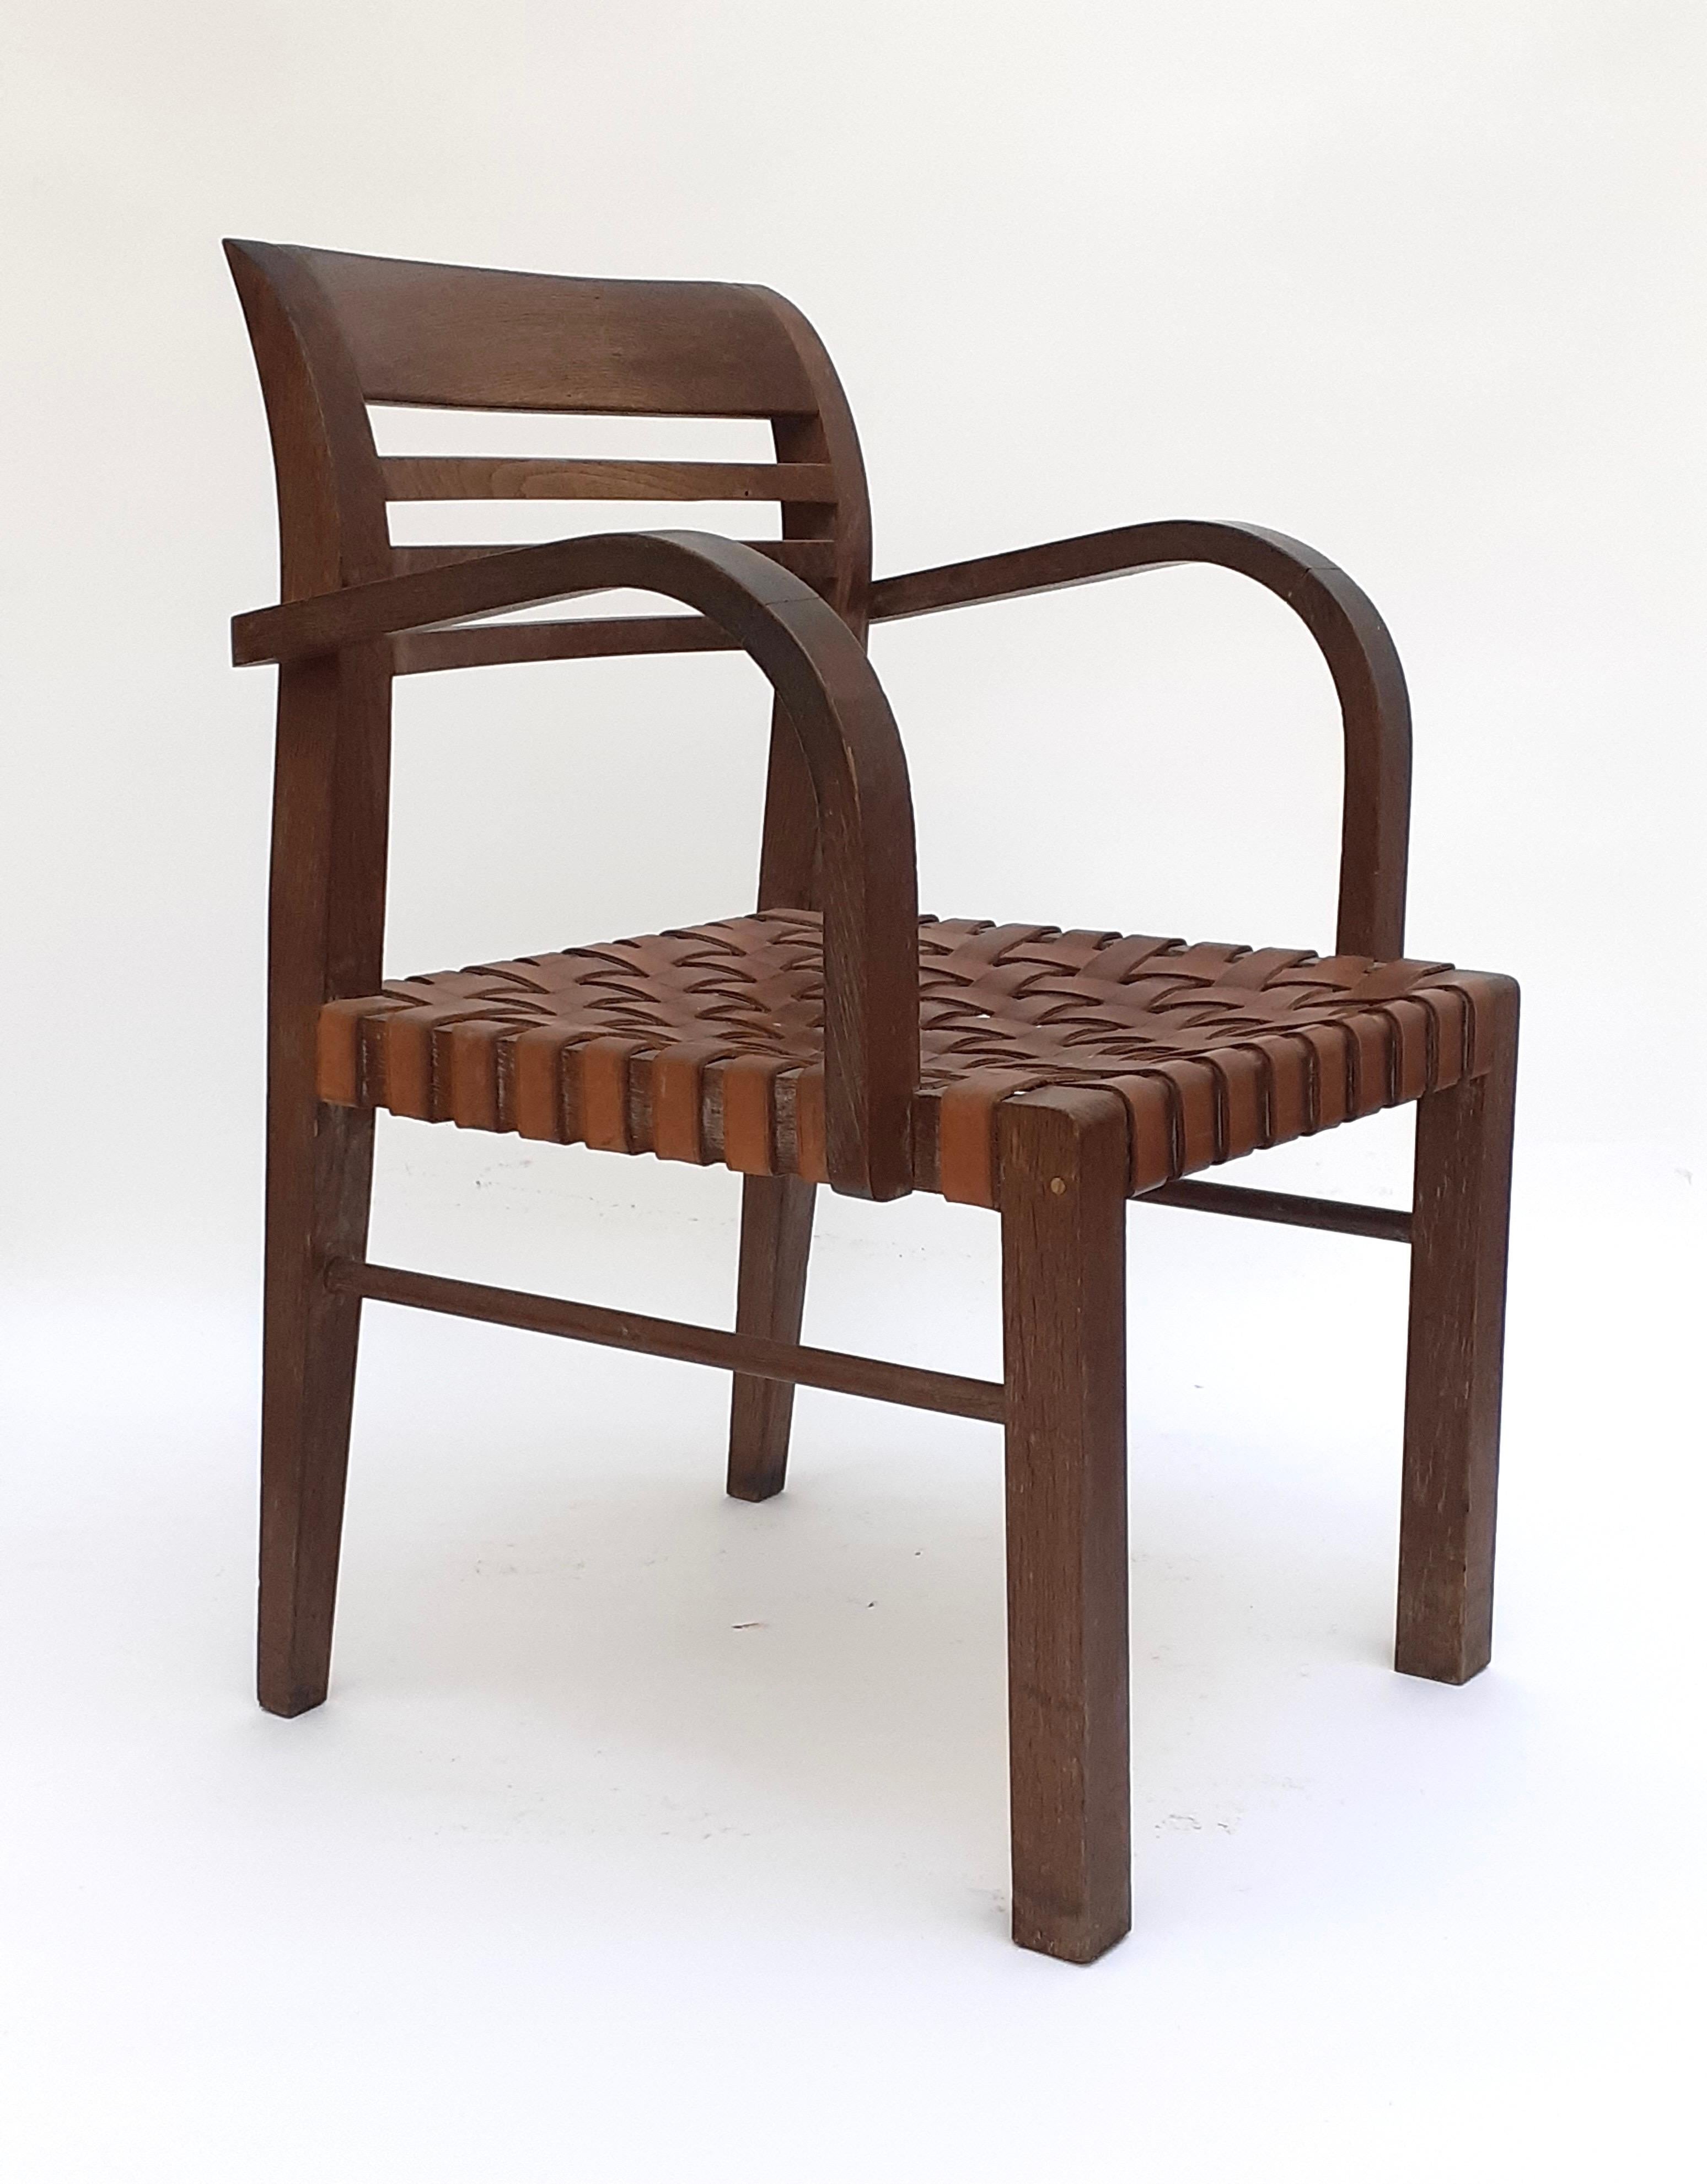 Sessel aus Eichenholz und Leder von René Gabriel, Norma, 1936

Sessel aus Eichenholz mit umgedrehter Rückenlehne und drei Stangen, die der Form der Rückenlehne folgen. Der Sitz ist mit gekreuzten Lederriemen gepolstert und die Armlehnen sind leicht